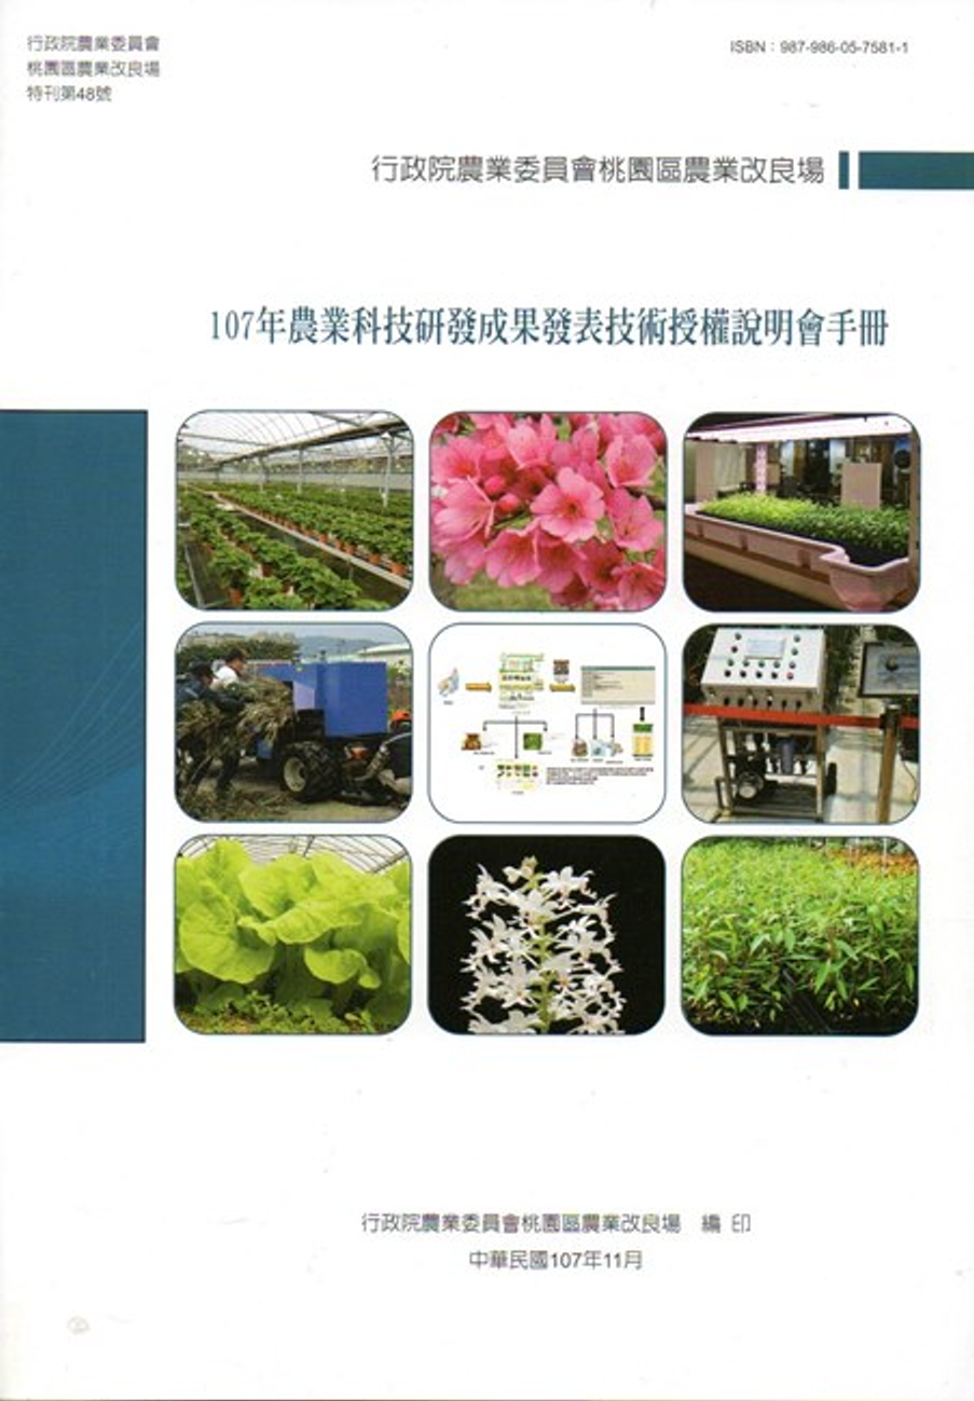 107年農業科技研發成果發表技術授權說明會手冊